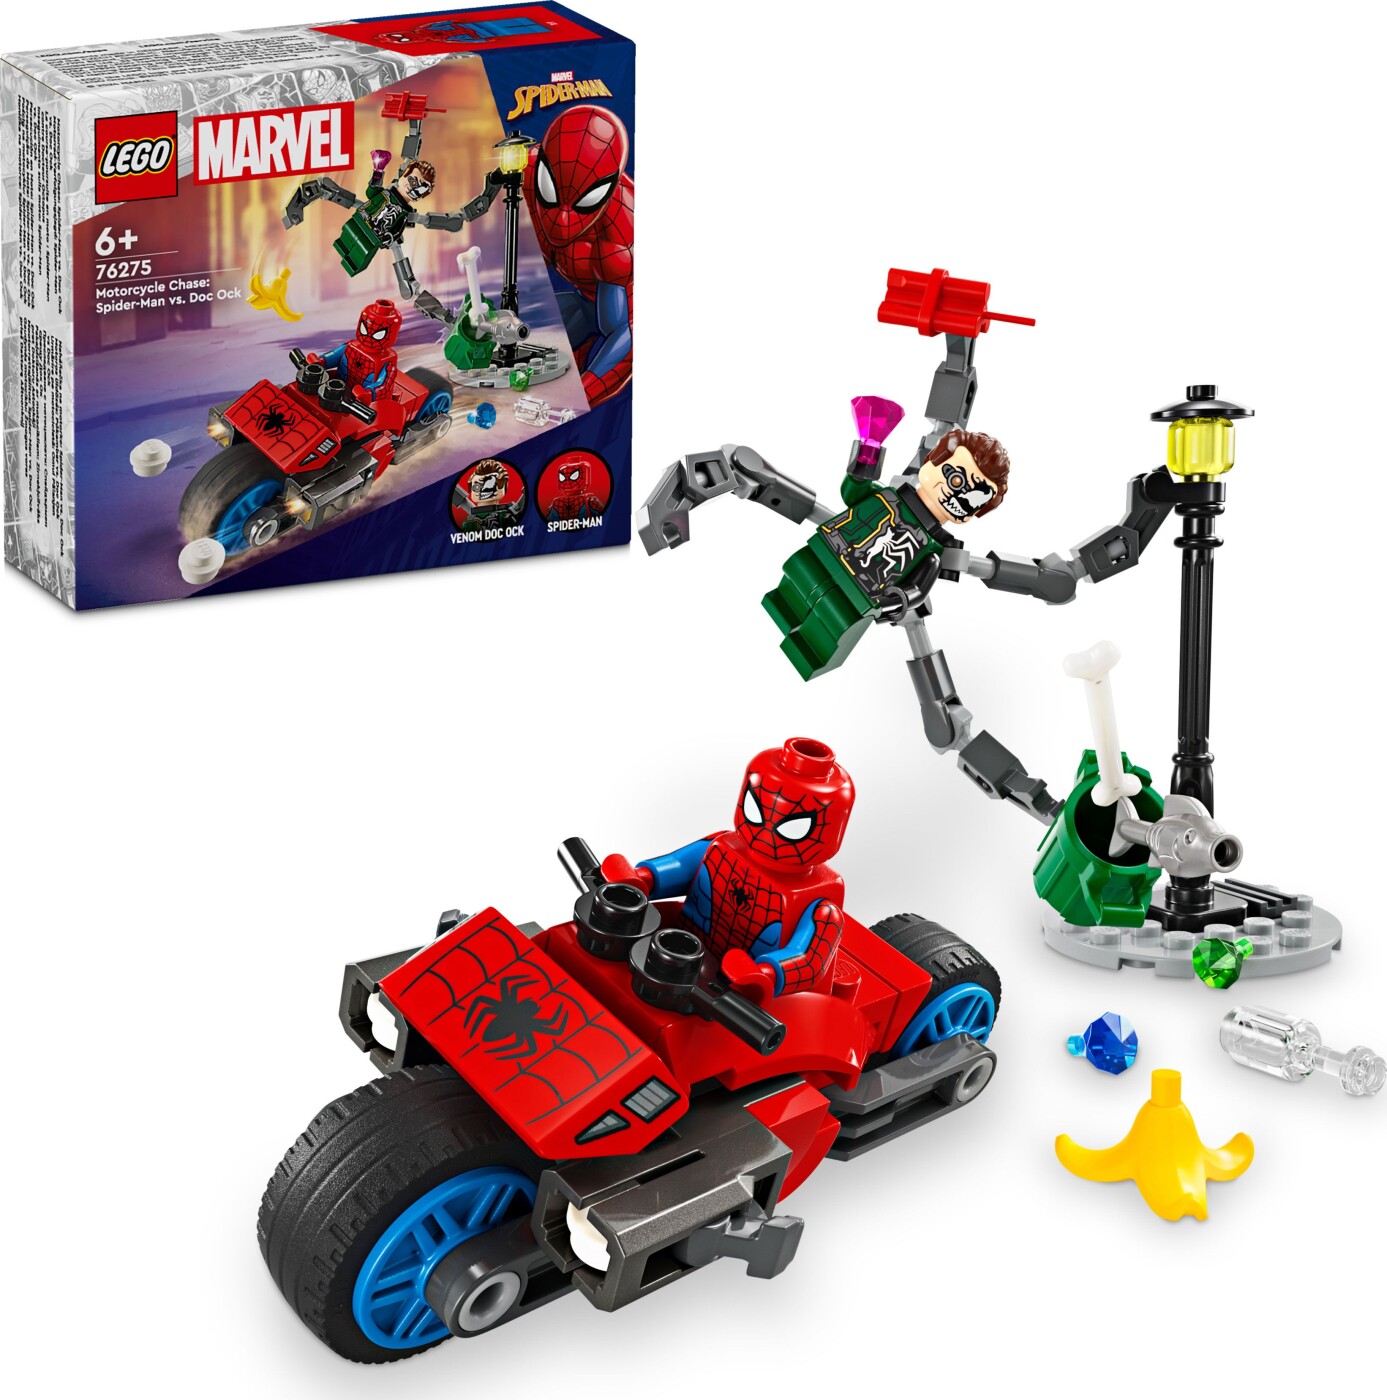 Billede af Lego Super Heroes - Motorcykeljagt: Spider-man Mod Doc Ock - 76275